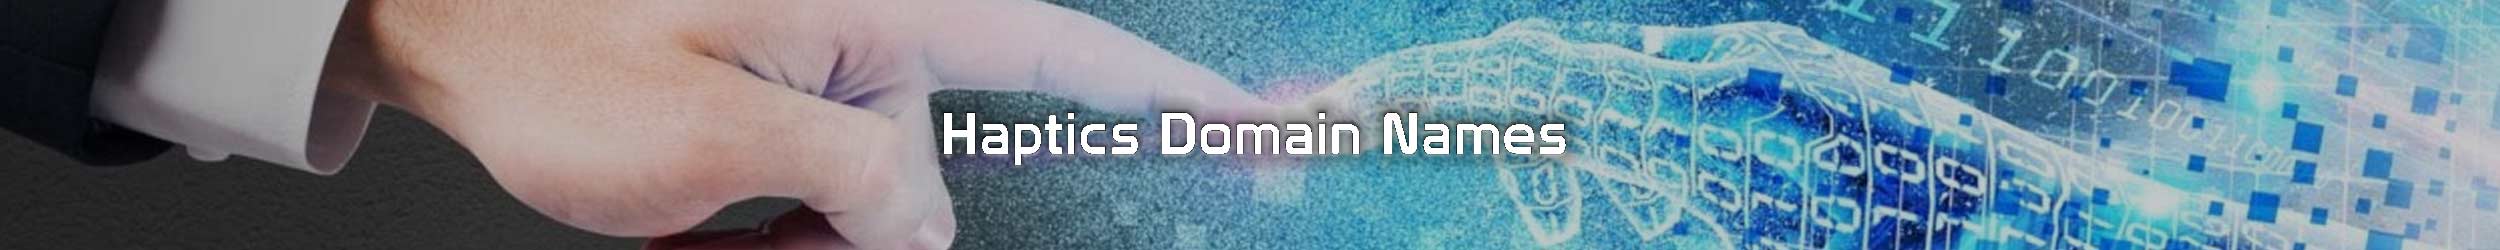 hatpics domain names